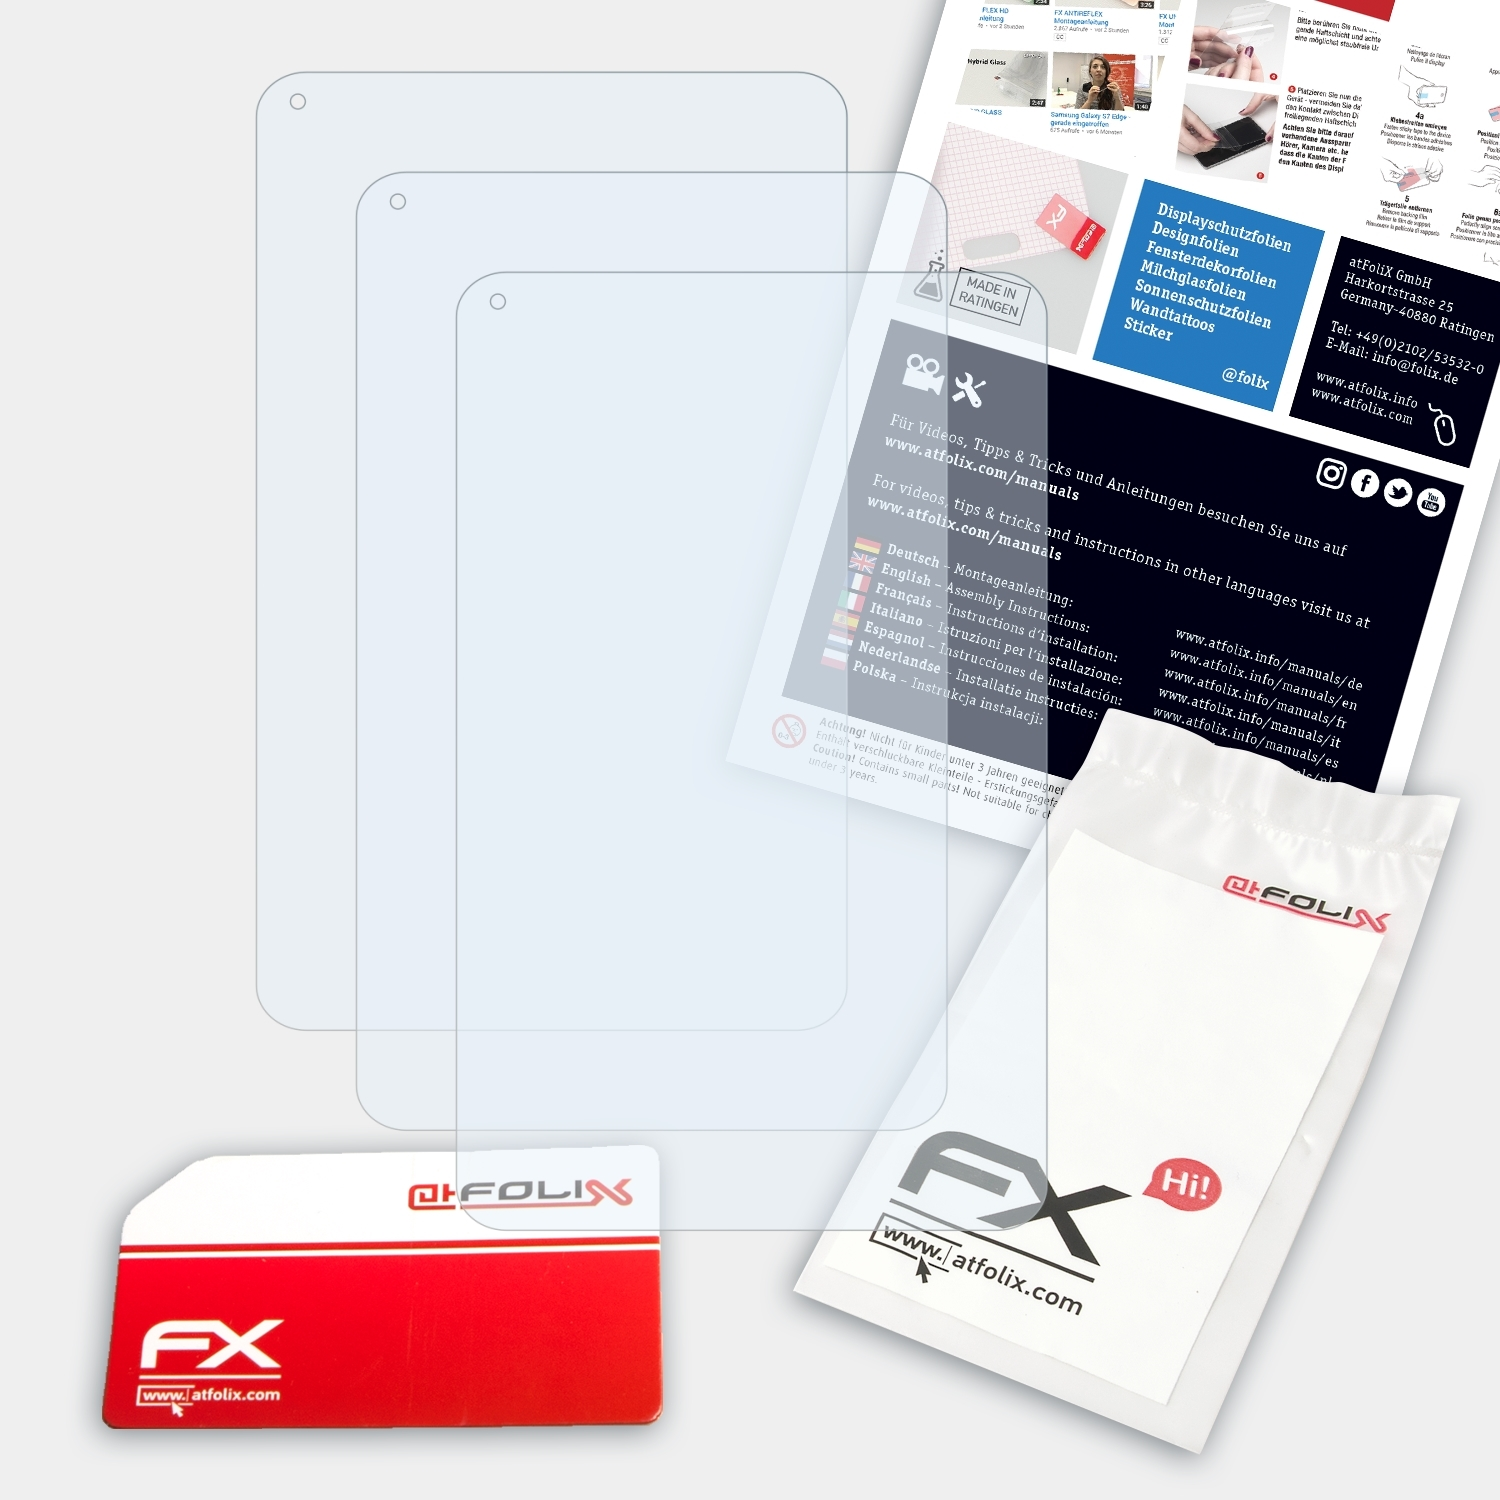 FX-Clear 3G) 3x Displayschutz(für X110 ATFOLIX XIDO